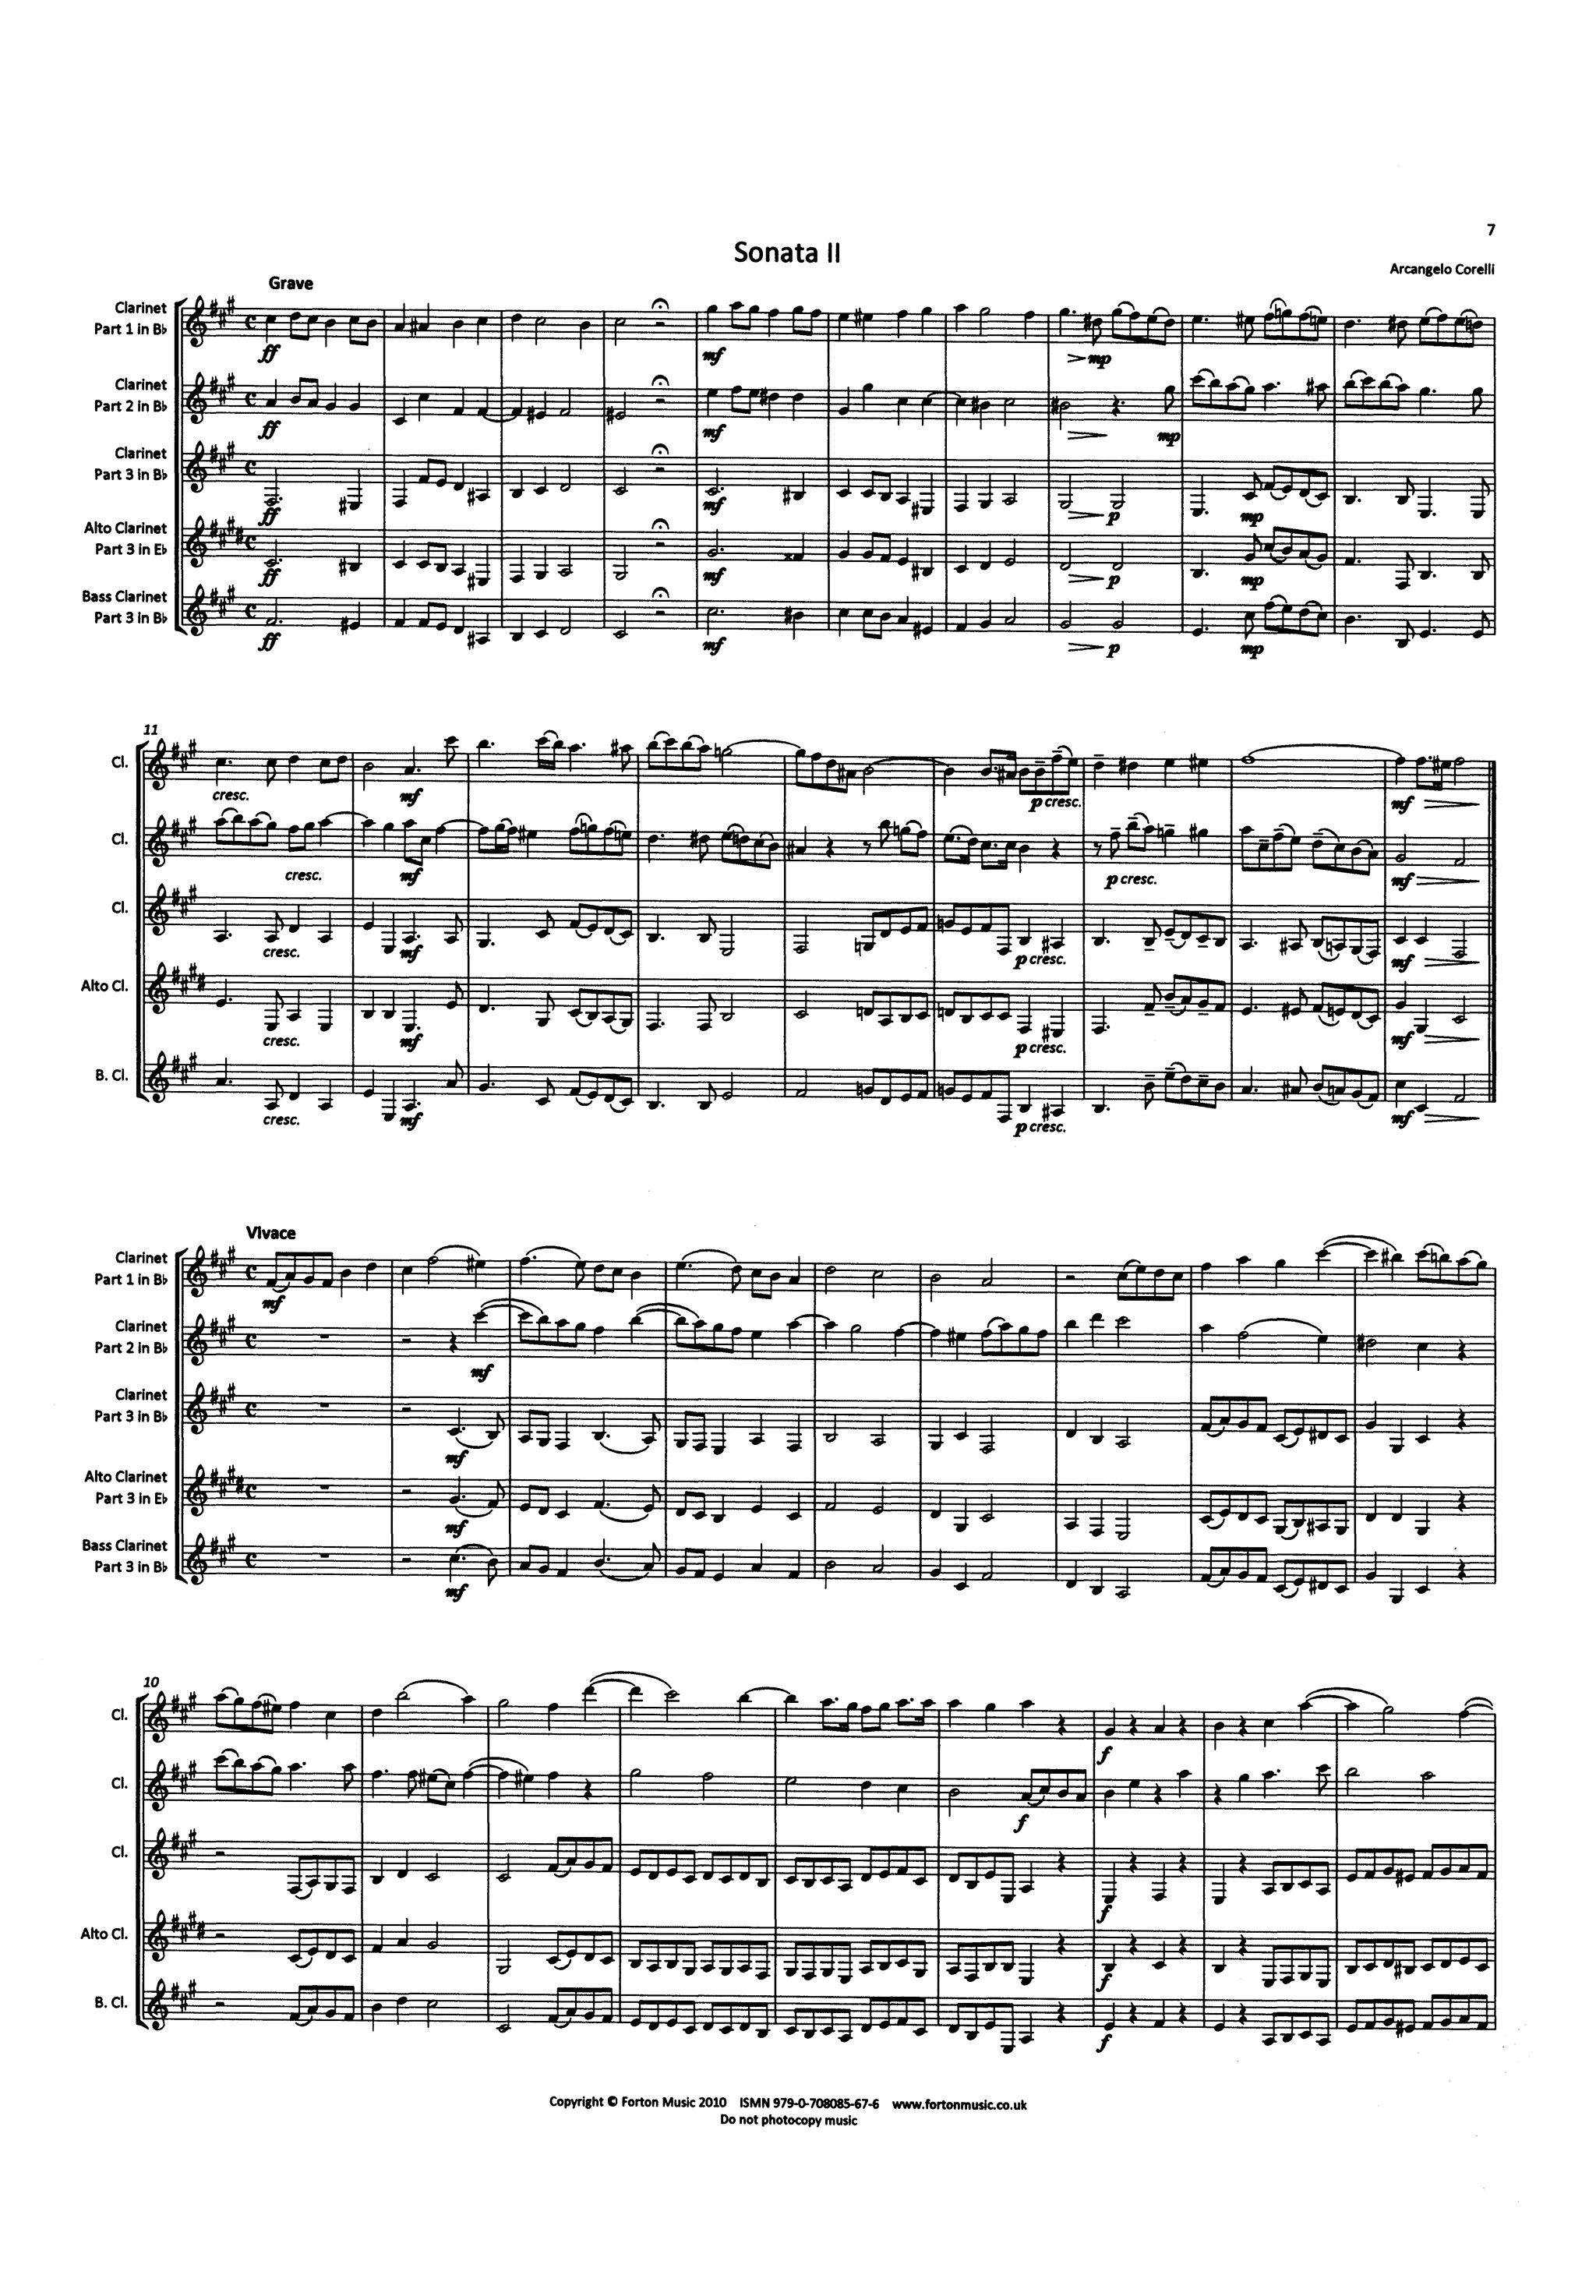 Corelli Trio Sonata in E Minor, Op. 1 No. 2 clarinets arrangement score